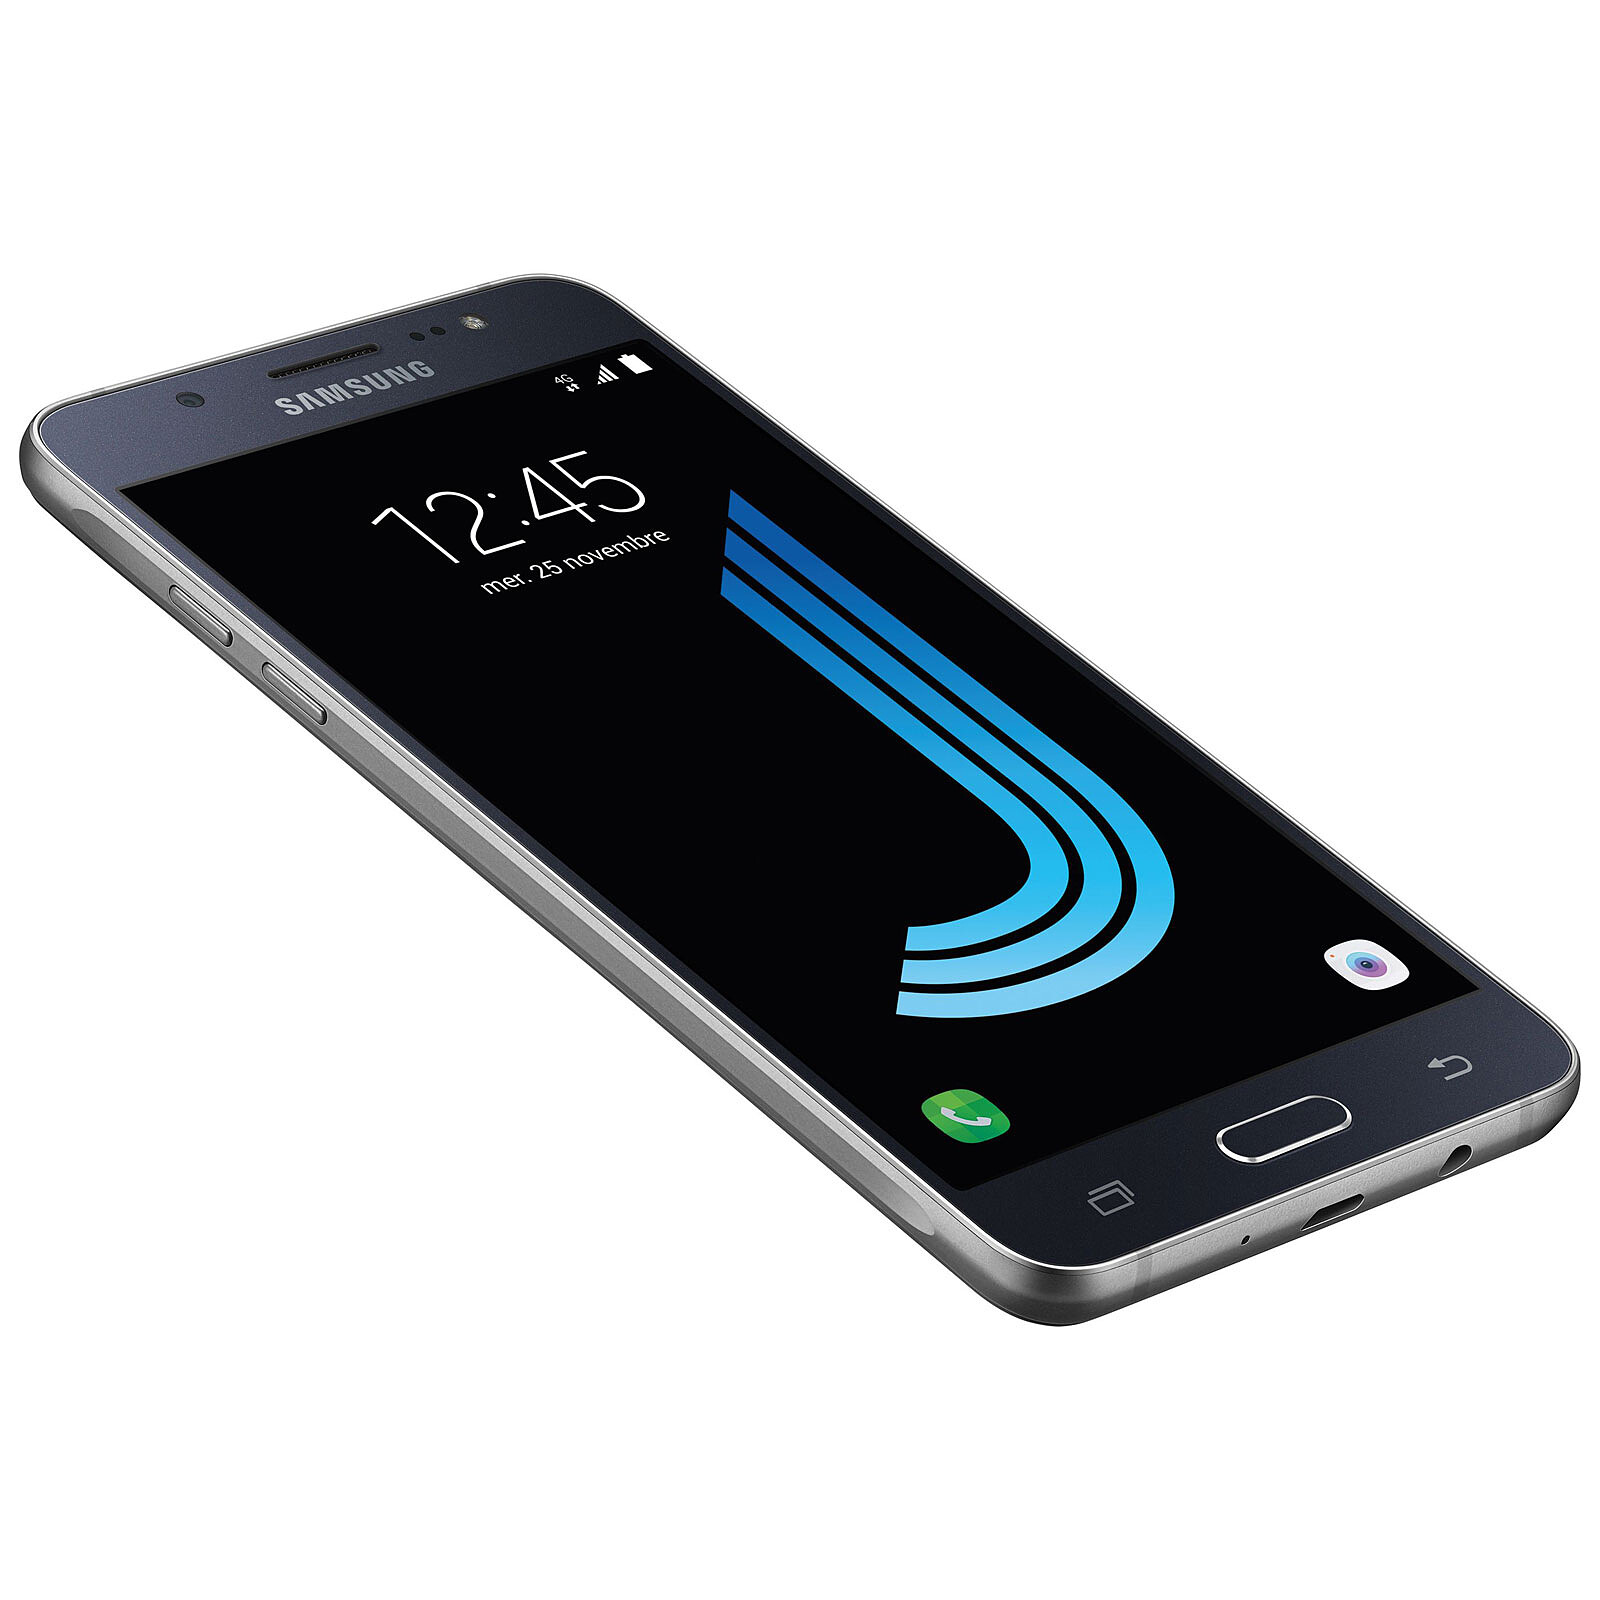 Samsung Galaxy J5 pas cher : prix, caractéristiques, avis